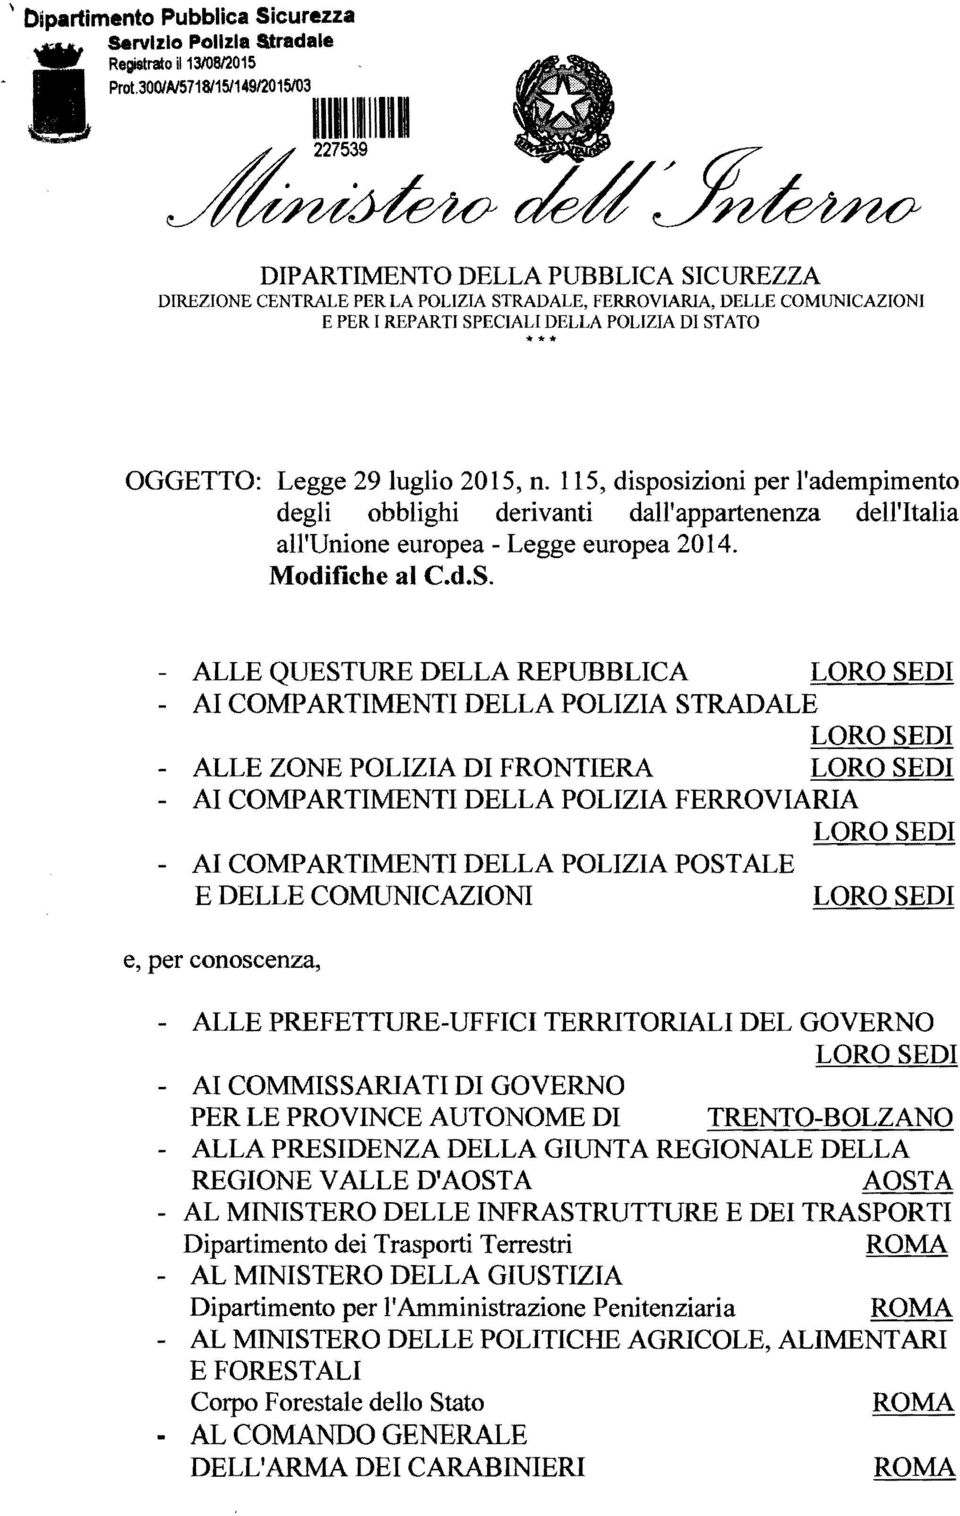 DI STATO *** OGGETTO: Legge 29 luglio 2015, n. 115, disposizioni per l'adempimento degli obblighi derivanti dall'appartenenza dell'italia all'unione europea - Legge europea 2014. Modifiche al C.d.S.